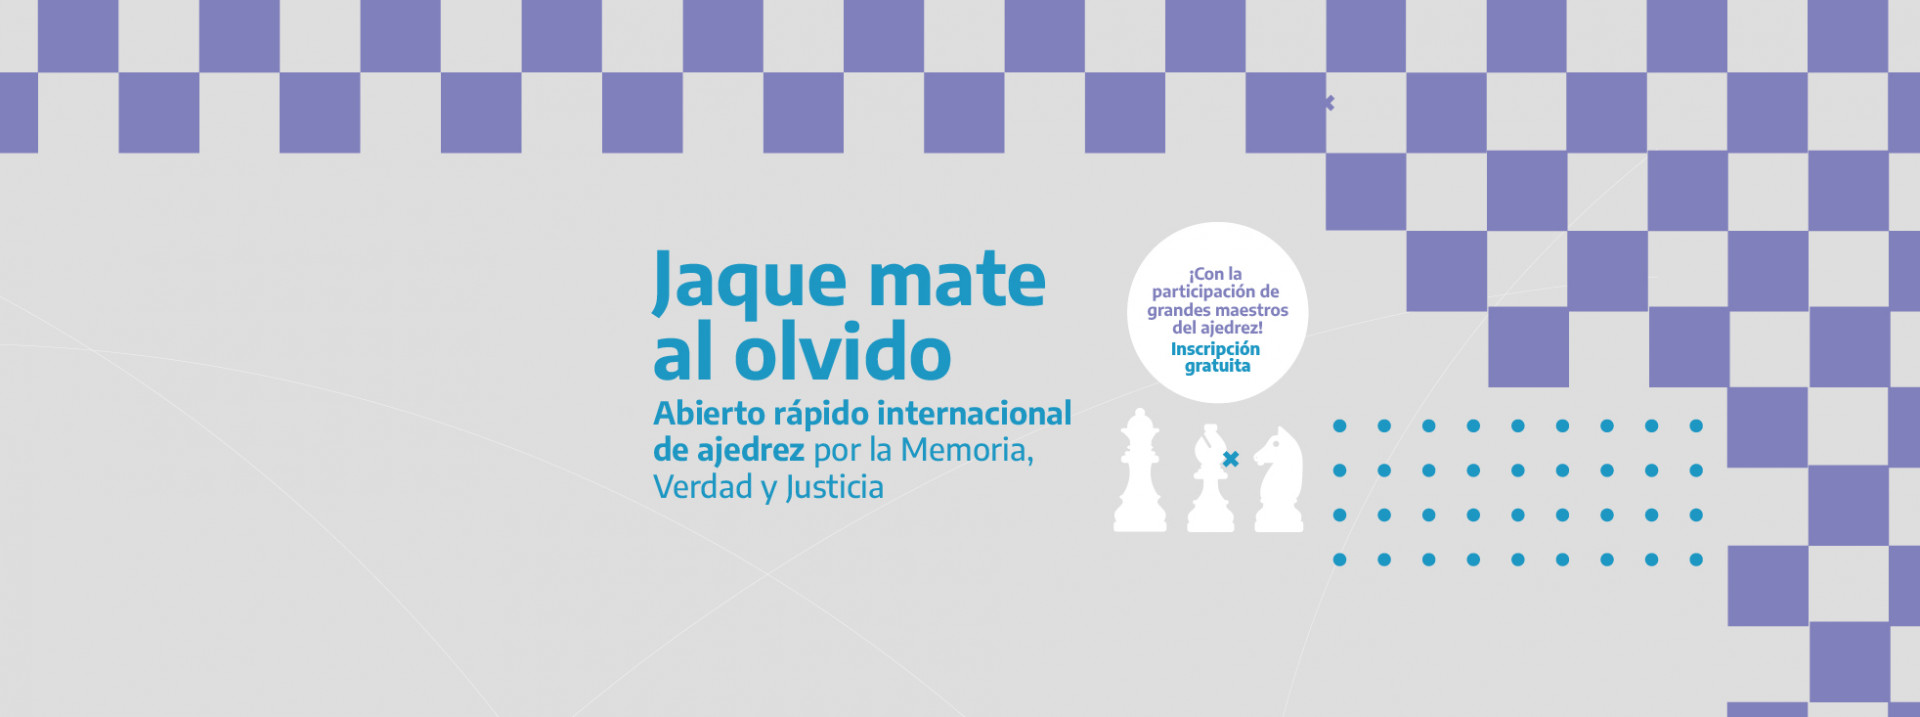 Yomequedoencasa: torneo de ajedrez online gratuito para todos los niveles